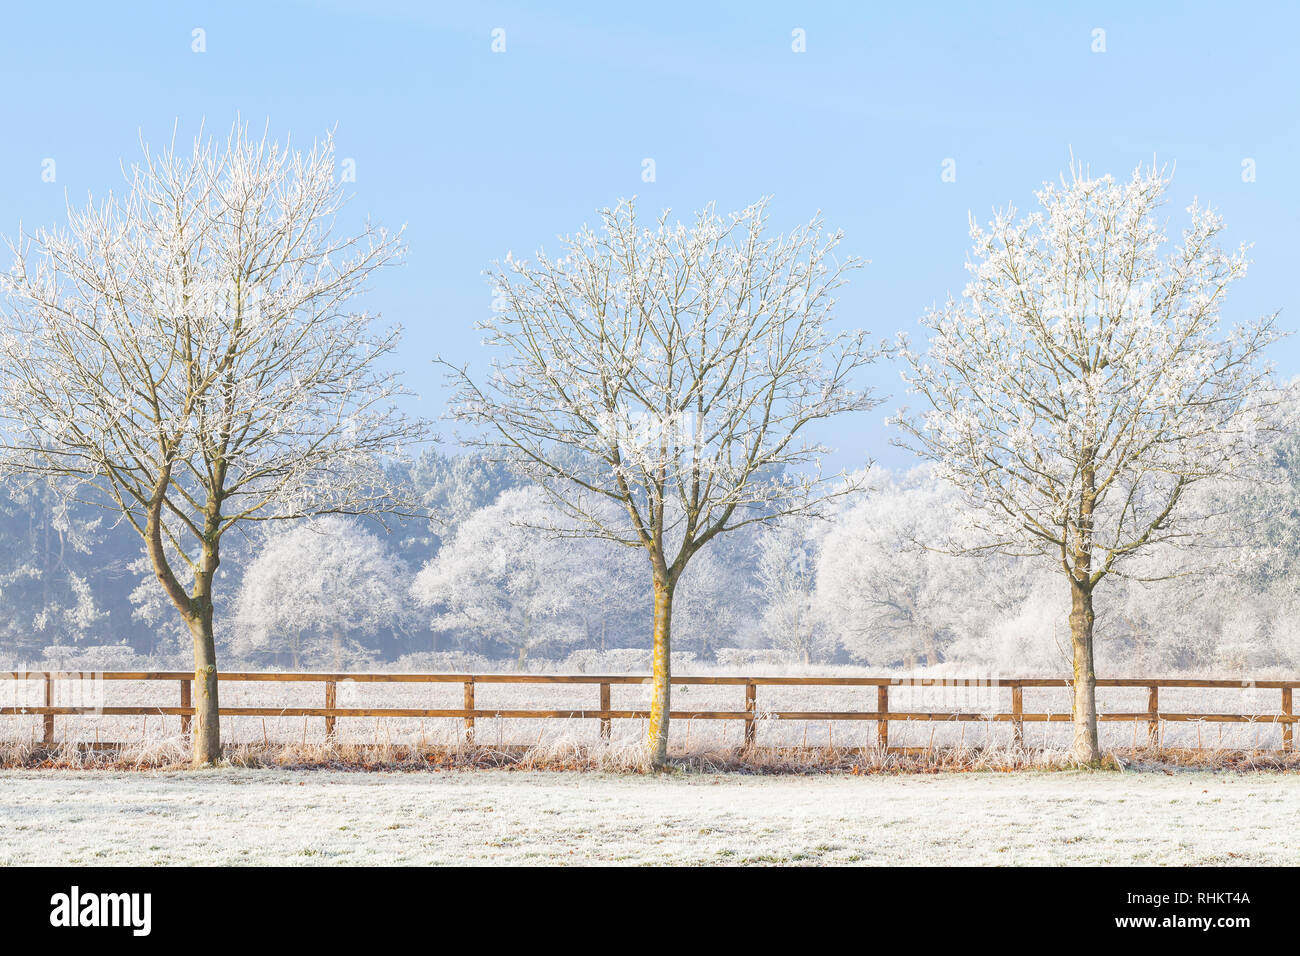 Rural hermosa escena de invierno con fuertes heladas en los árboles y una valla de madera dos rieles. El azul claro del cielo y campos congelados. Tres árboles en una línea. Foto de stock